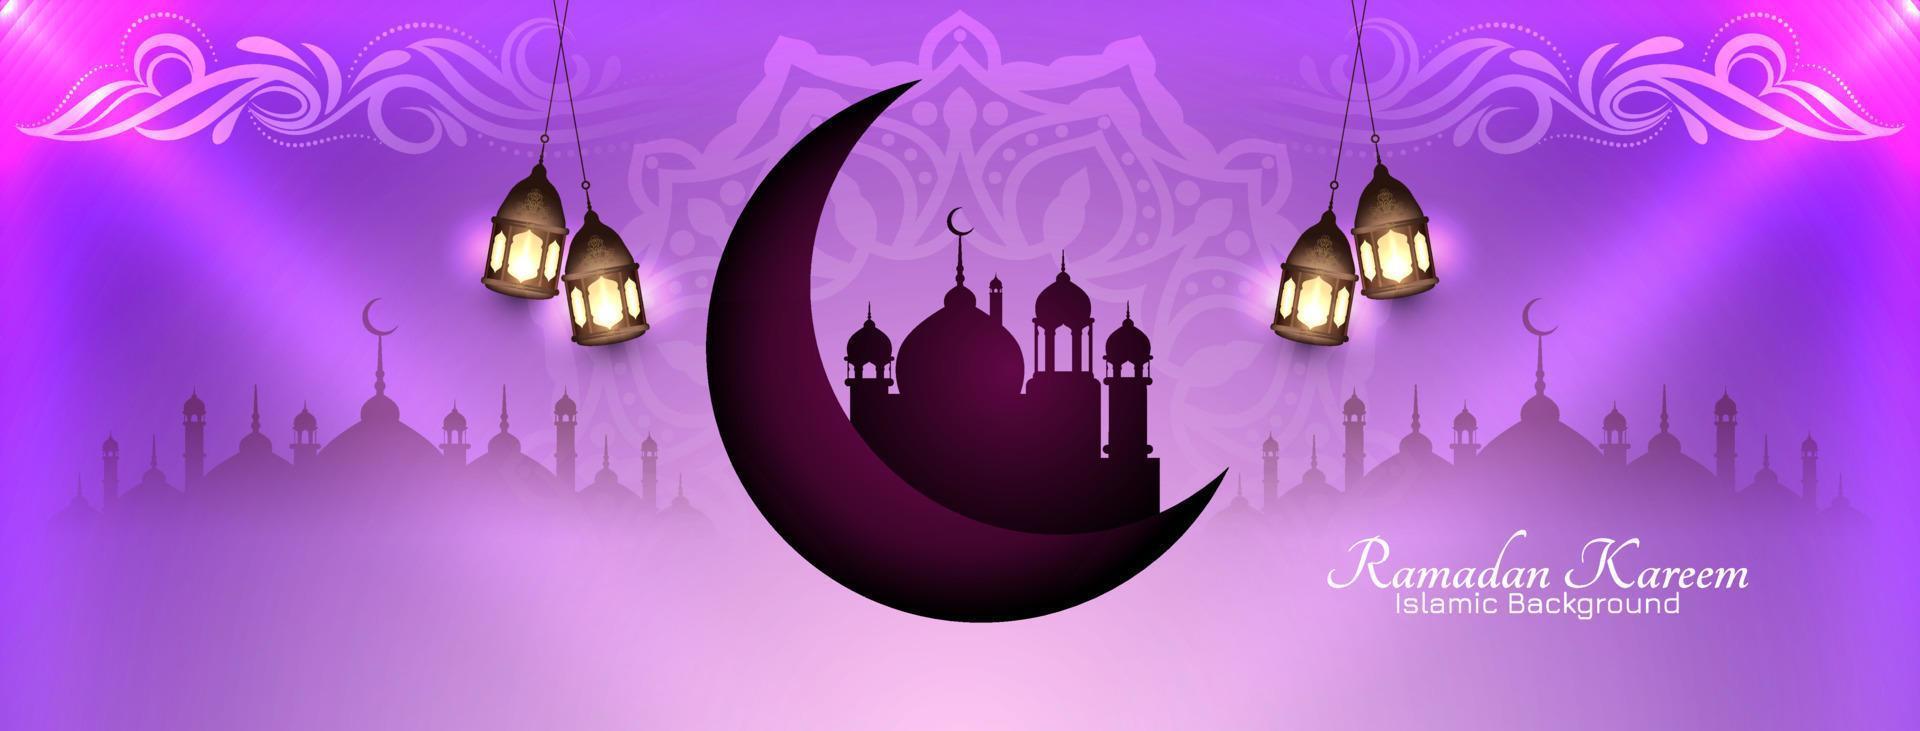 ramadan kareem islamisches fest feier kulturelles banner vektor